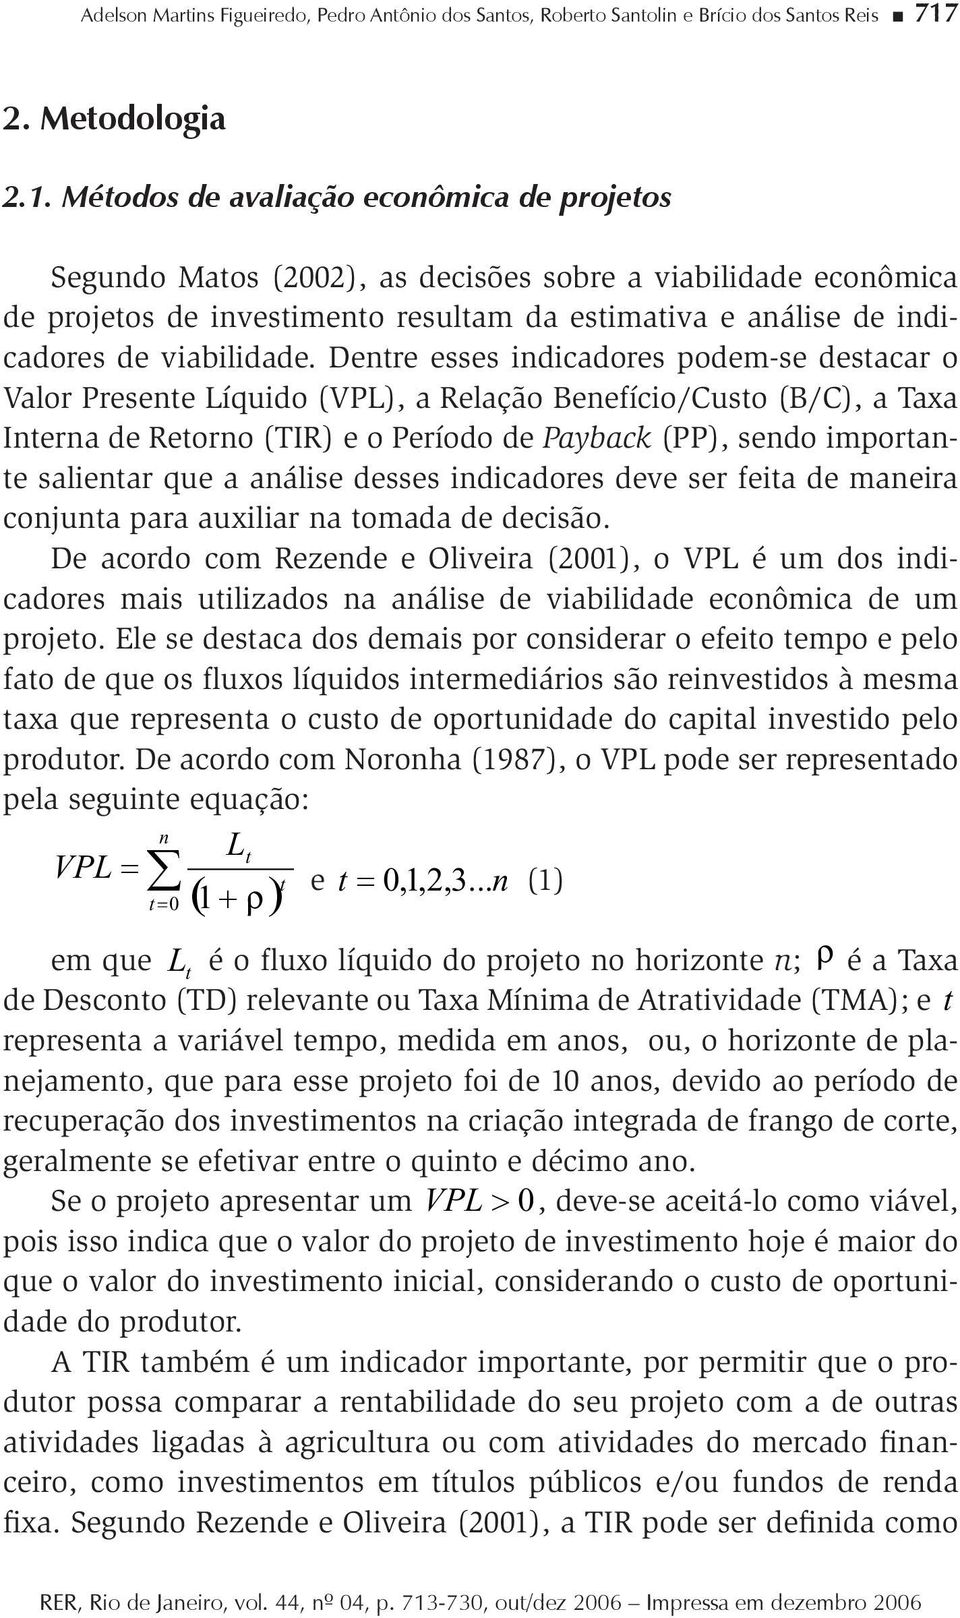 Méodos de avaliação econômica de projeos Segundo Maos (2002), as decisões sobre a viabilidade econômica de projeos de invesimeno resulam da esimaiva e análise de indicadores de viabilidade.